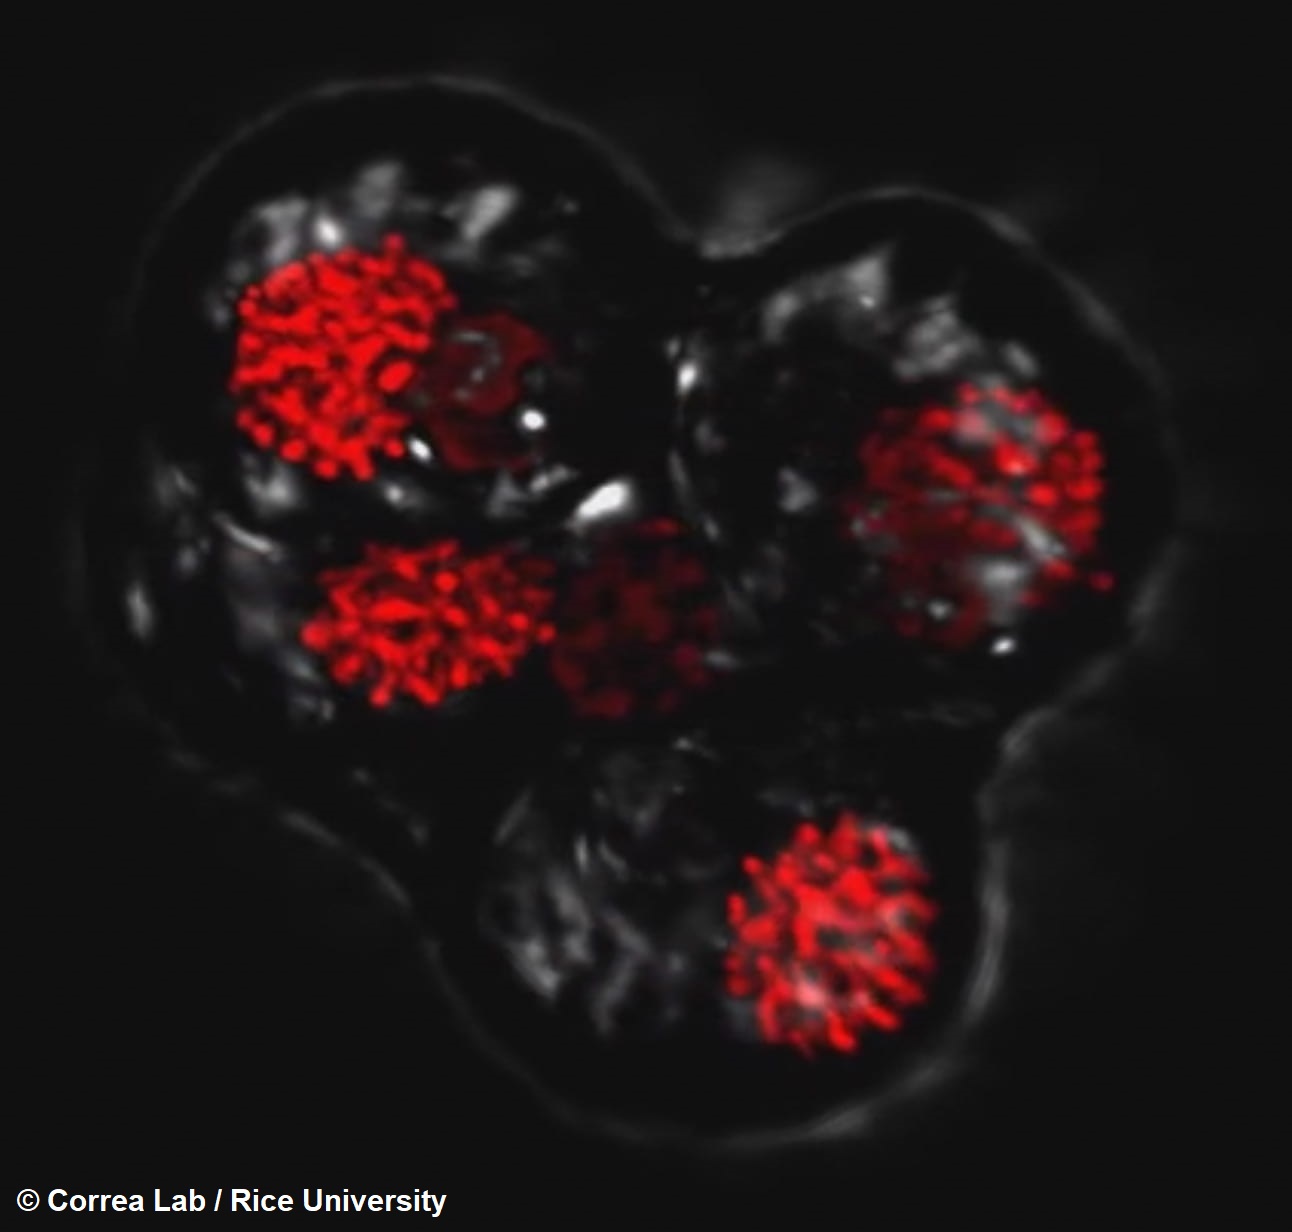 Tétrada de dinoflagelados que pronto se dividirá en cuatro células separadas, capturada por científicos de la Universidad de Rice a través de un microscopio confocal. Los cuatro núcleos de la célula están representados en rojo.